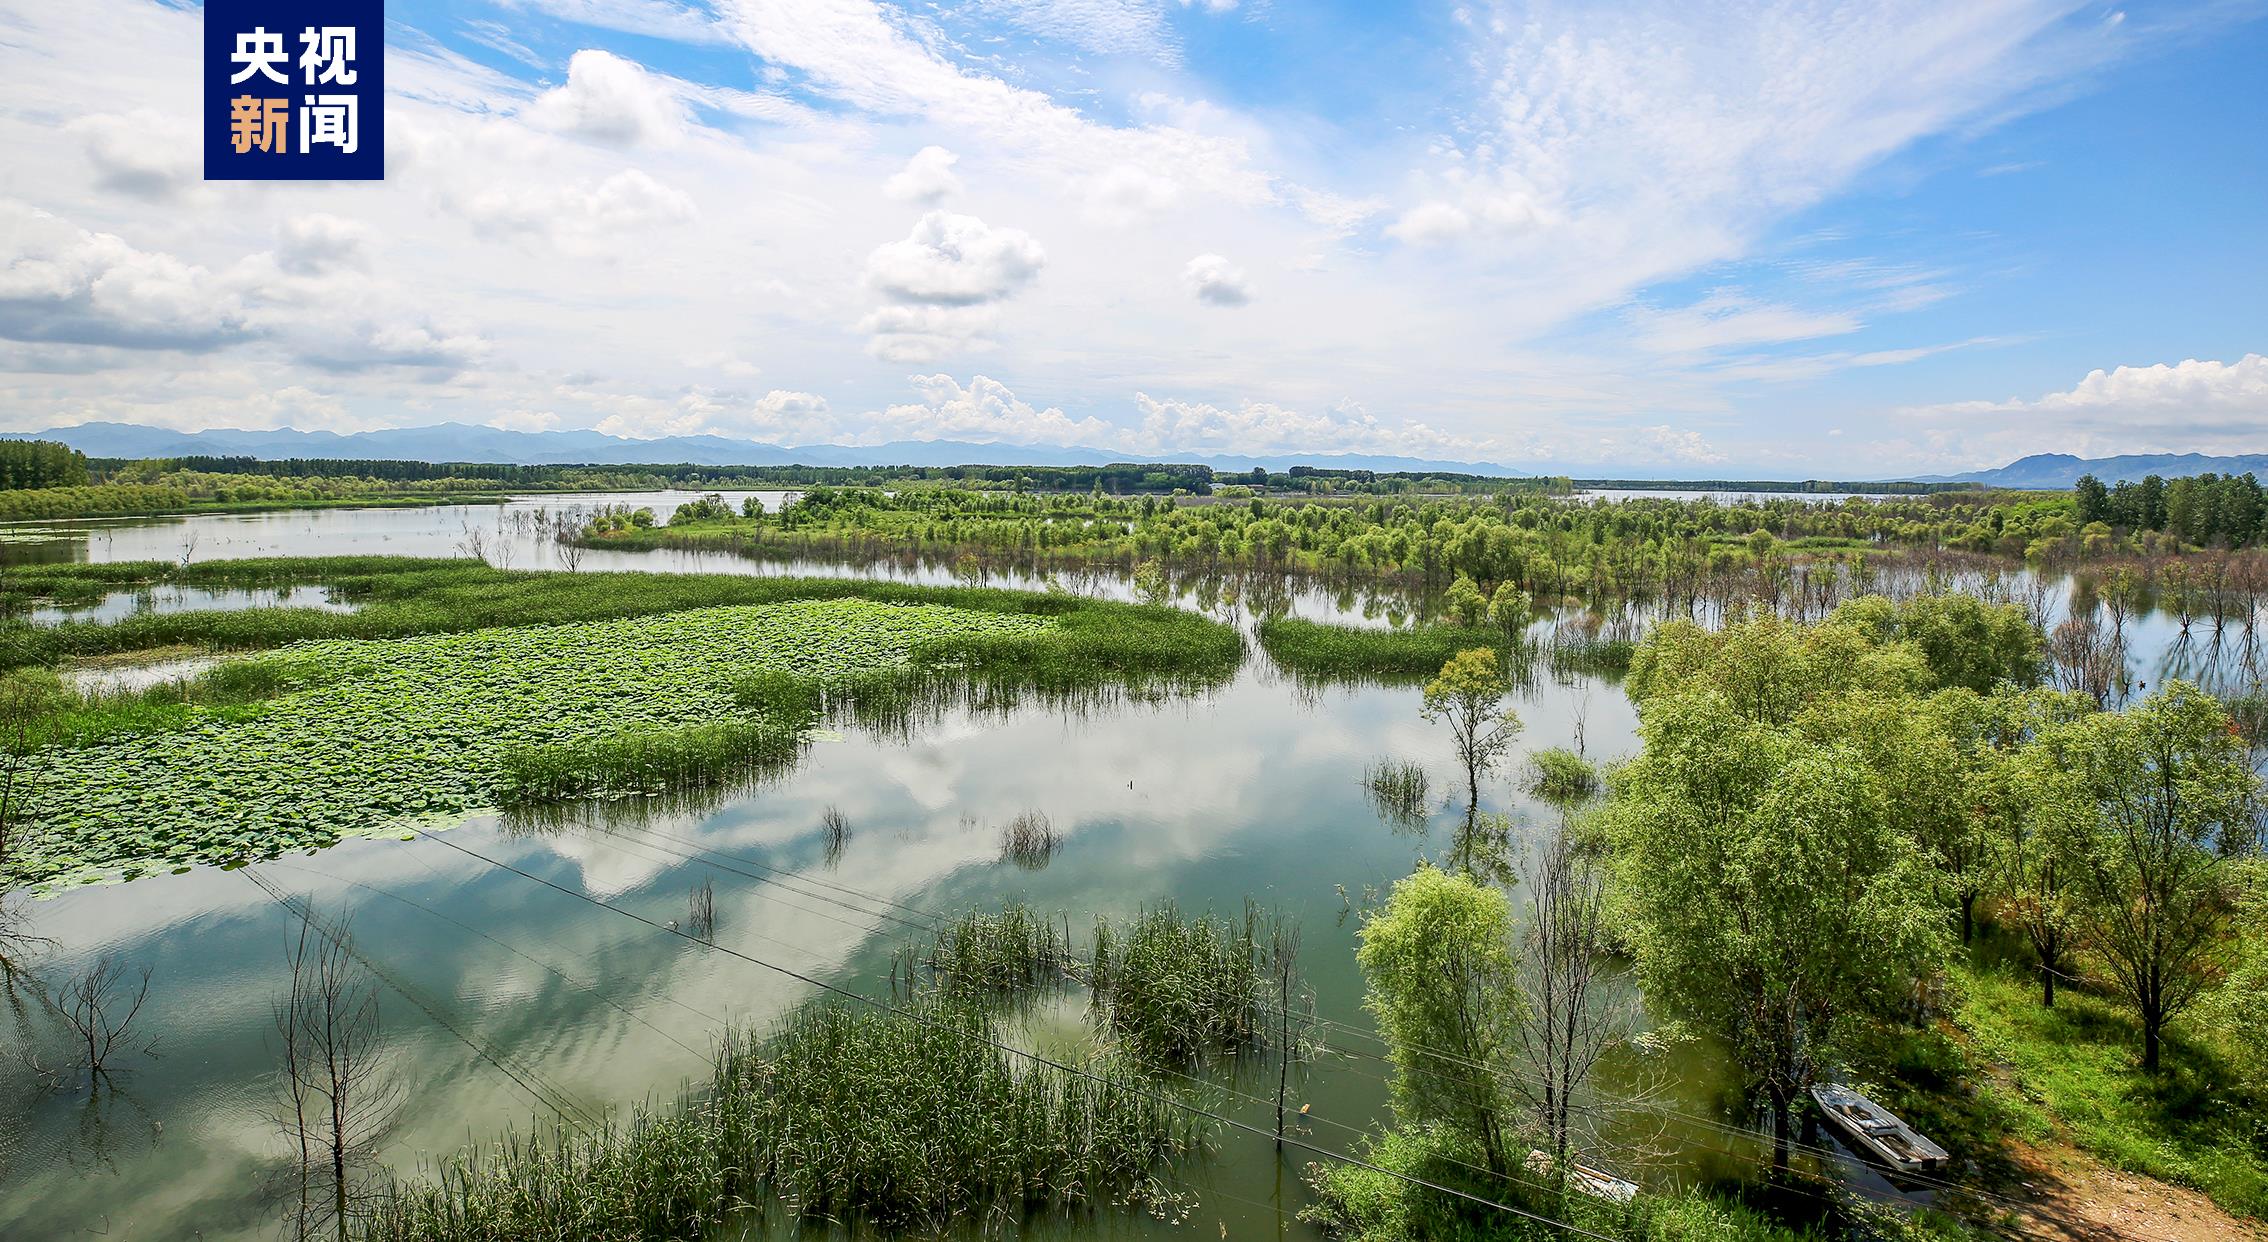 北京延庆野鸭湖湿地成功入选《国际重要湿地名录》